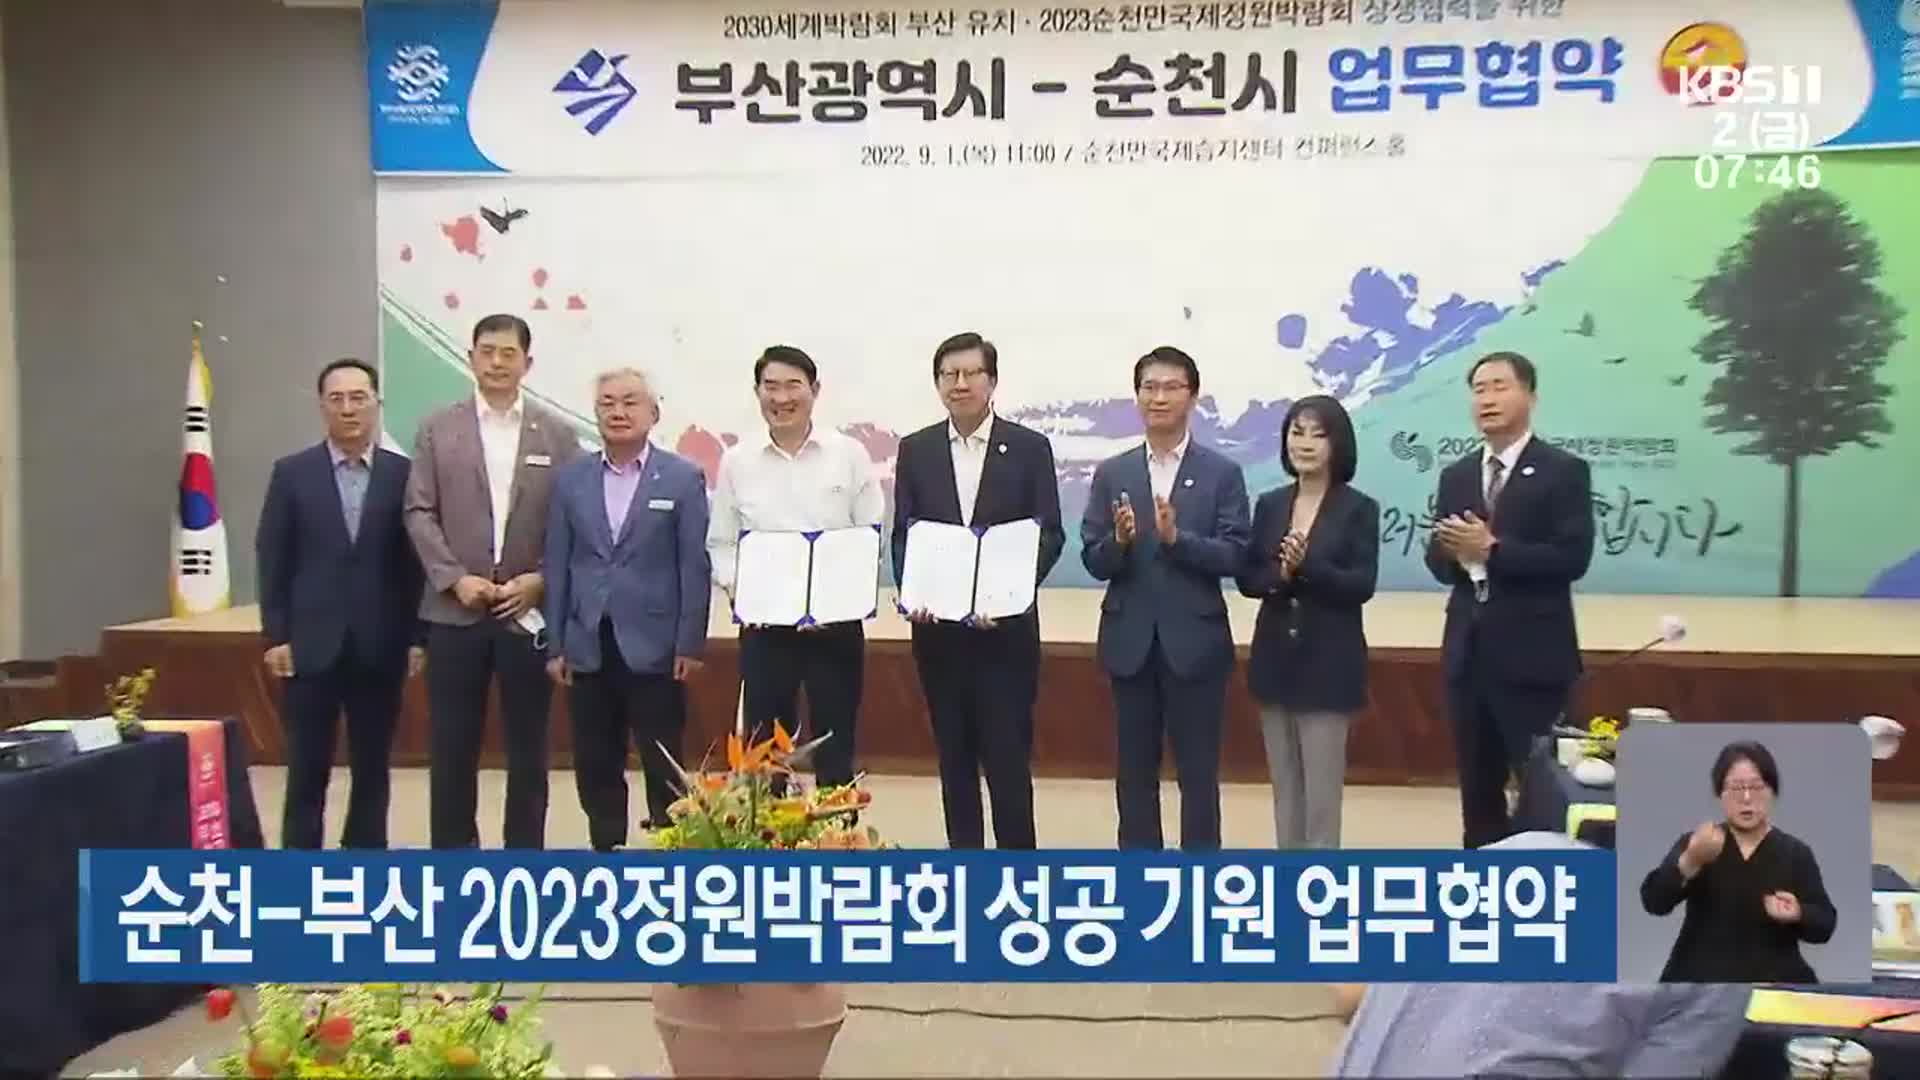 순천-부산 2023정원박람회 성공 기원 업무협약